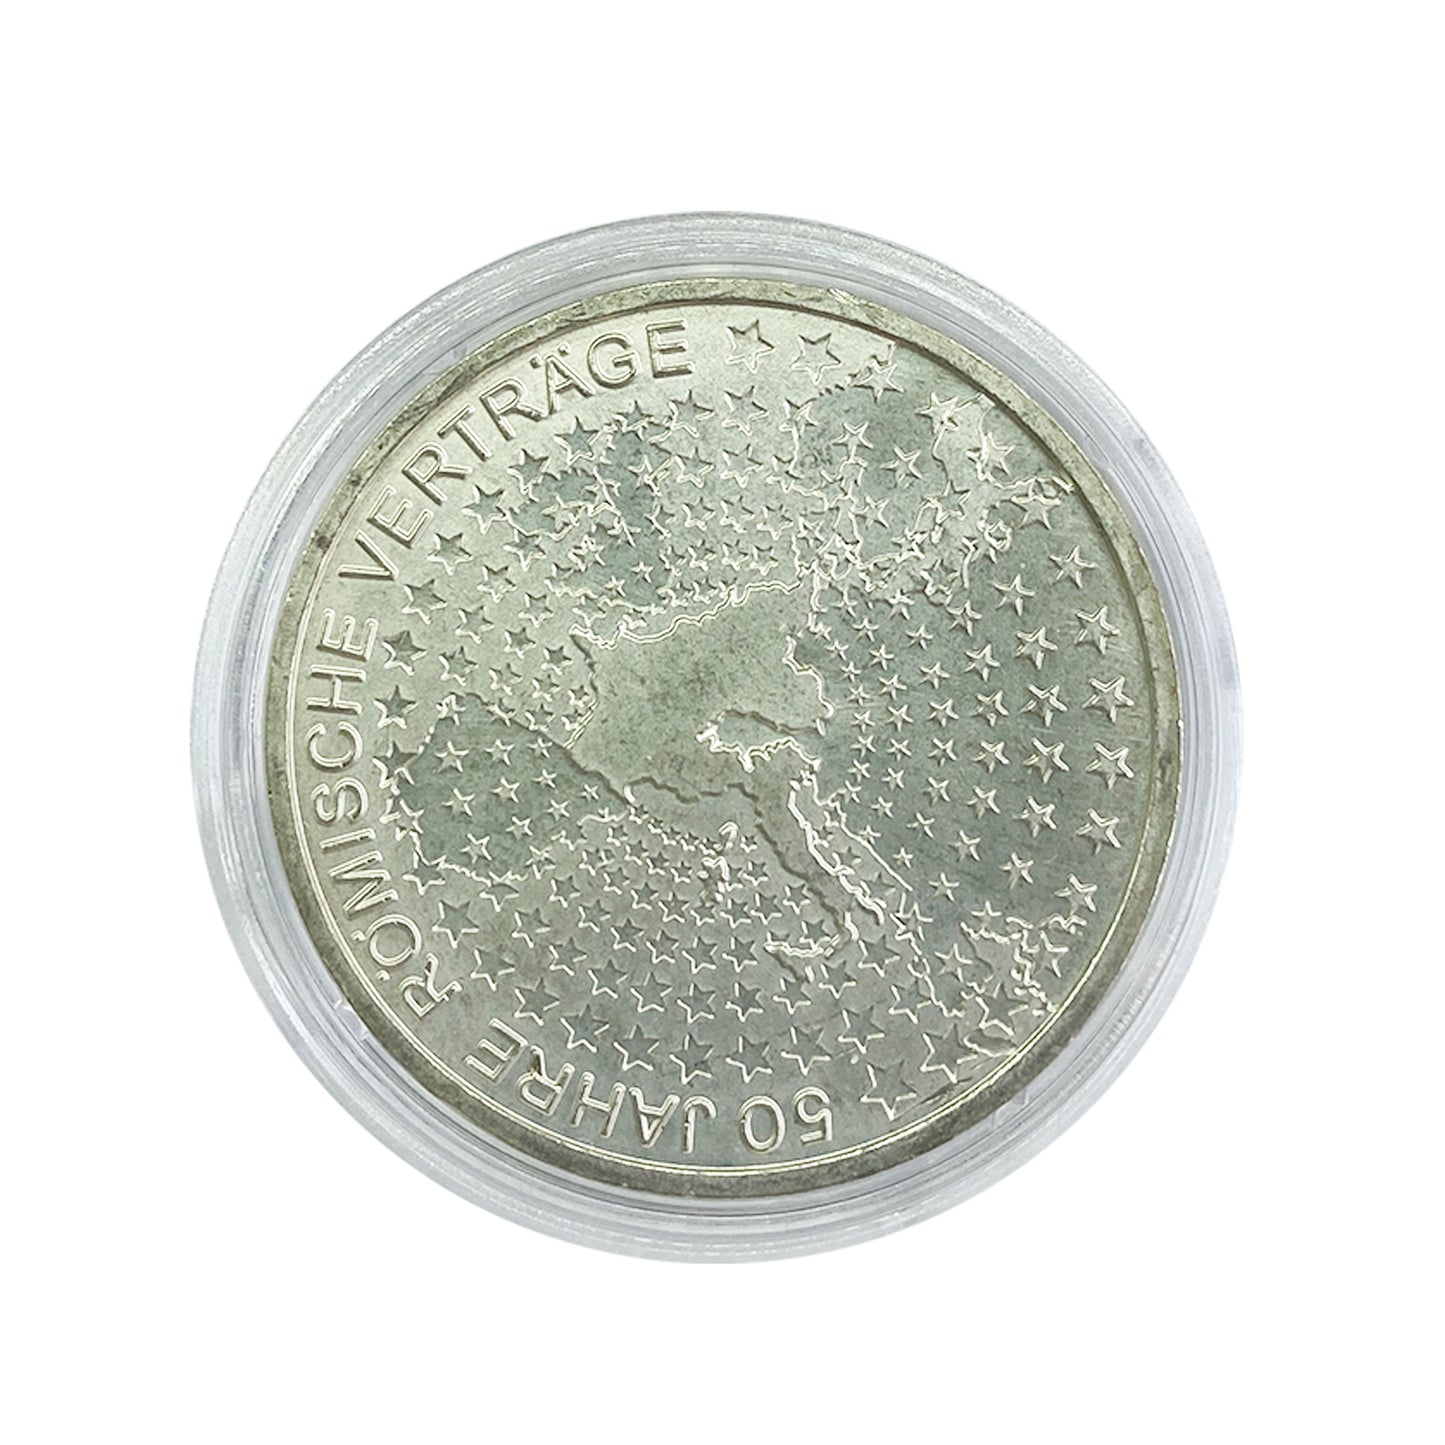 Alemania - Moneda 10 euros plata 2007 - 50 Aniversario del Tratado de Roma